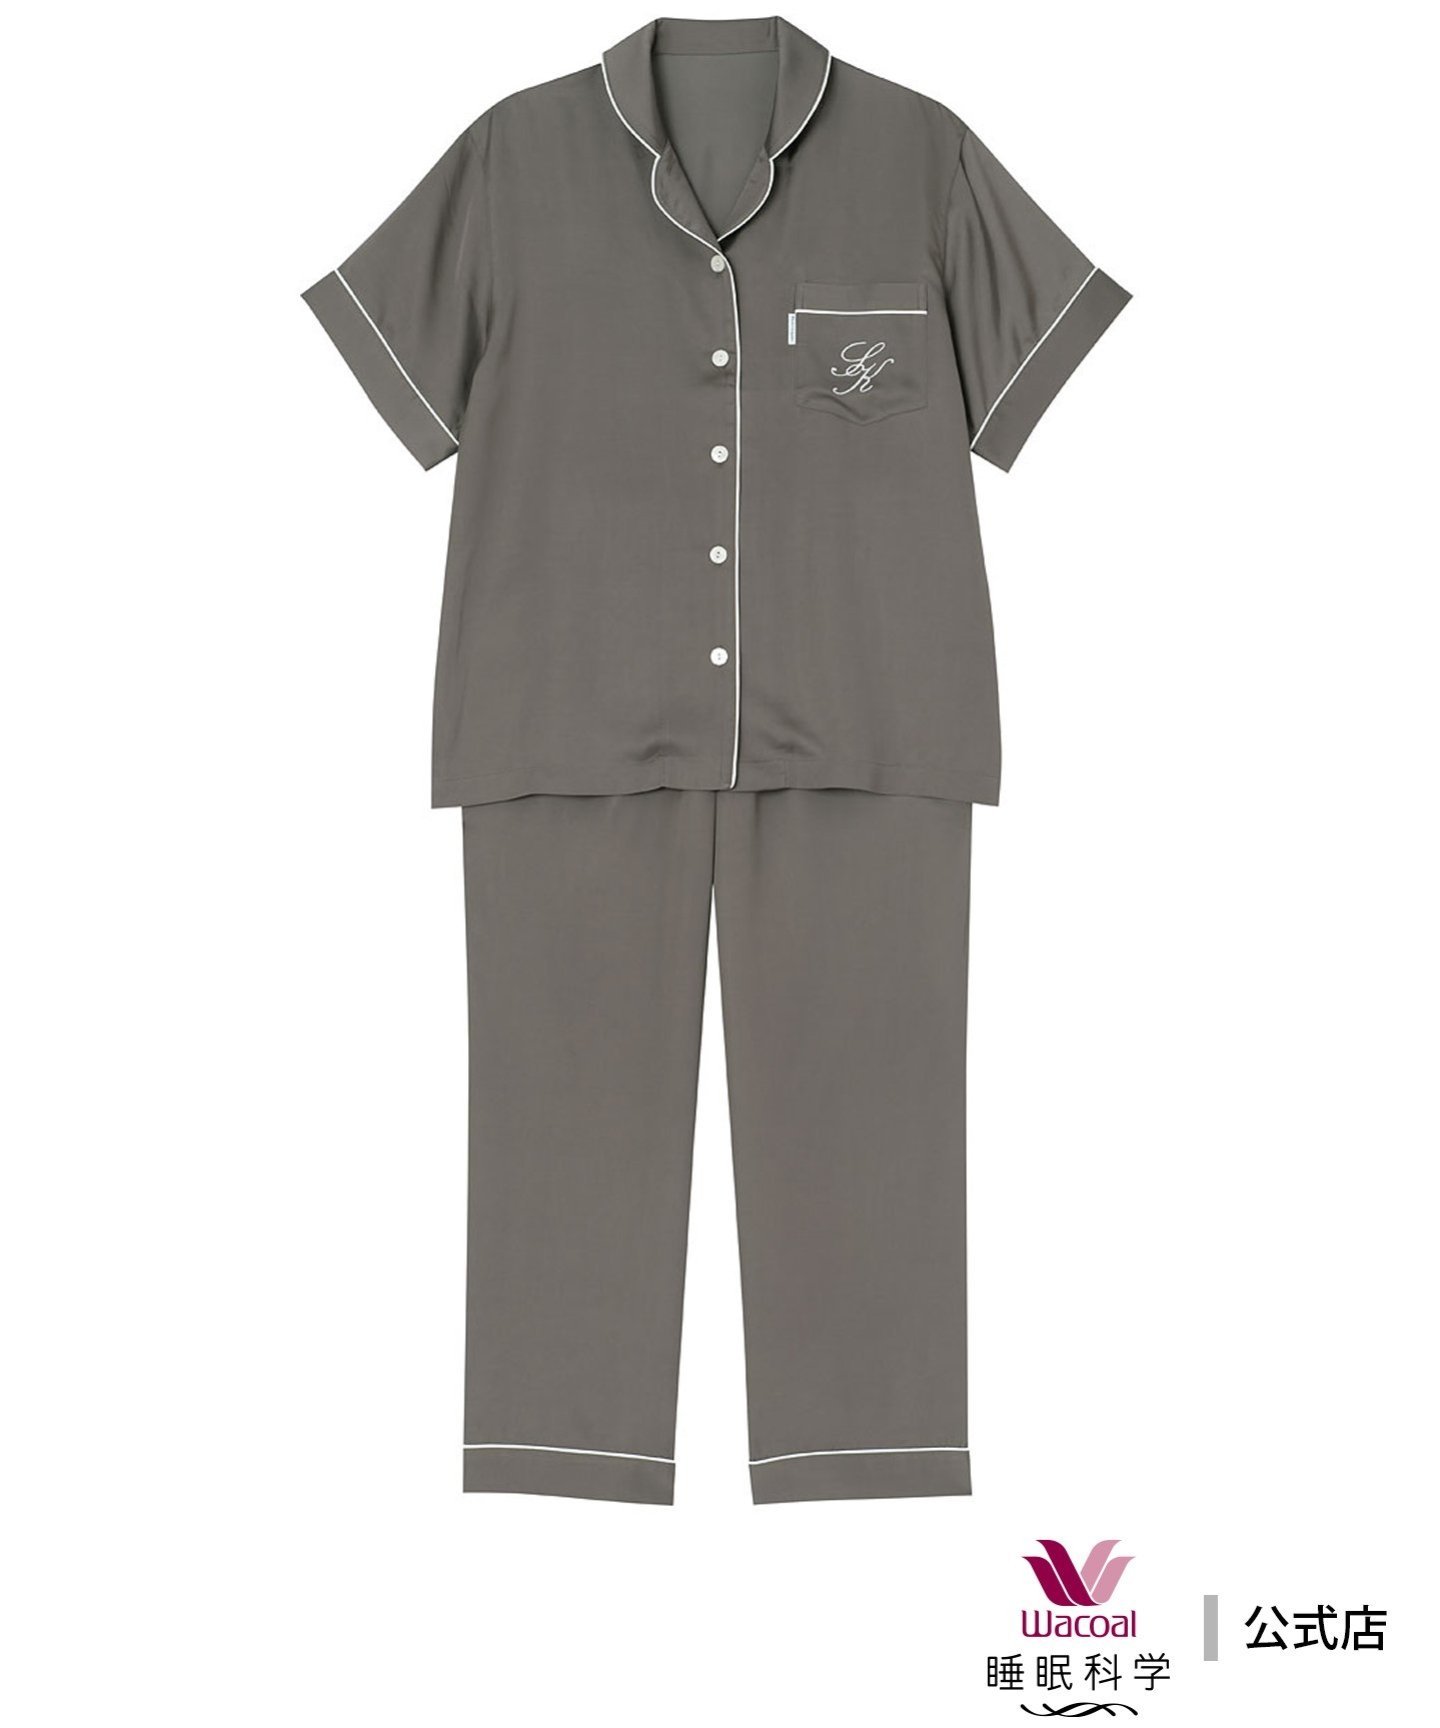 ワコール/睡眠科学 (W)ワコール 睡眠科学 パジャマ 5分袖 9分丈 シルクのような肌ざわり ワコール／スイミンカガク インナー・ルームウェア パジャマ ブラウン ピンク